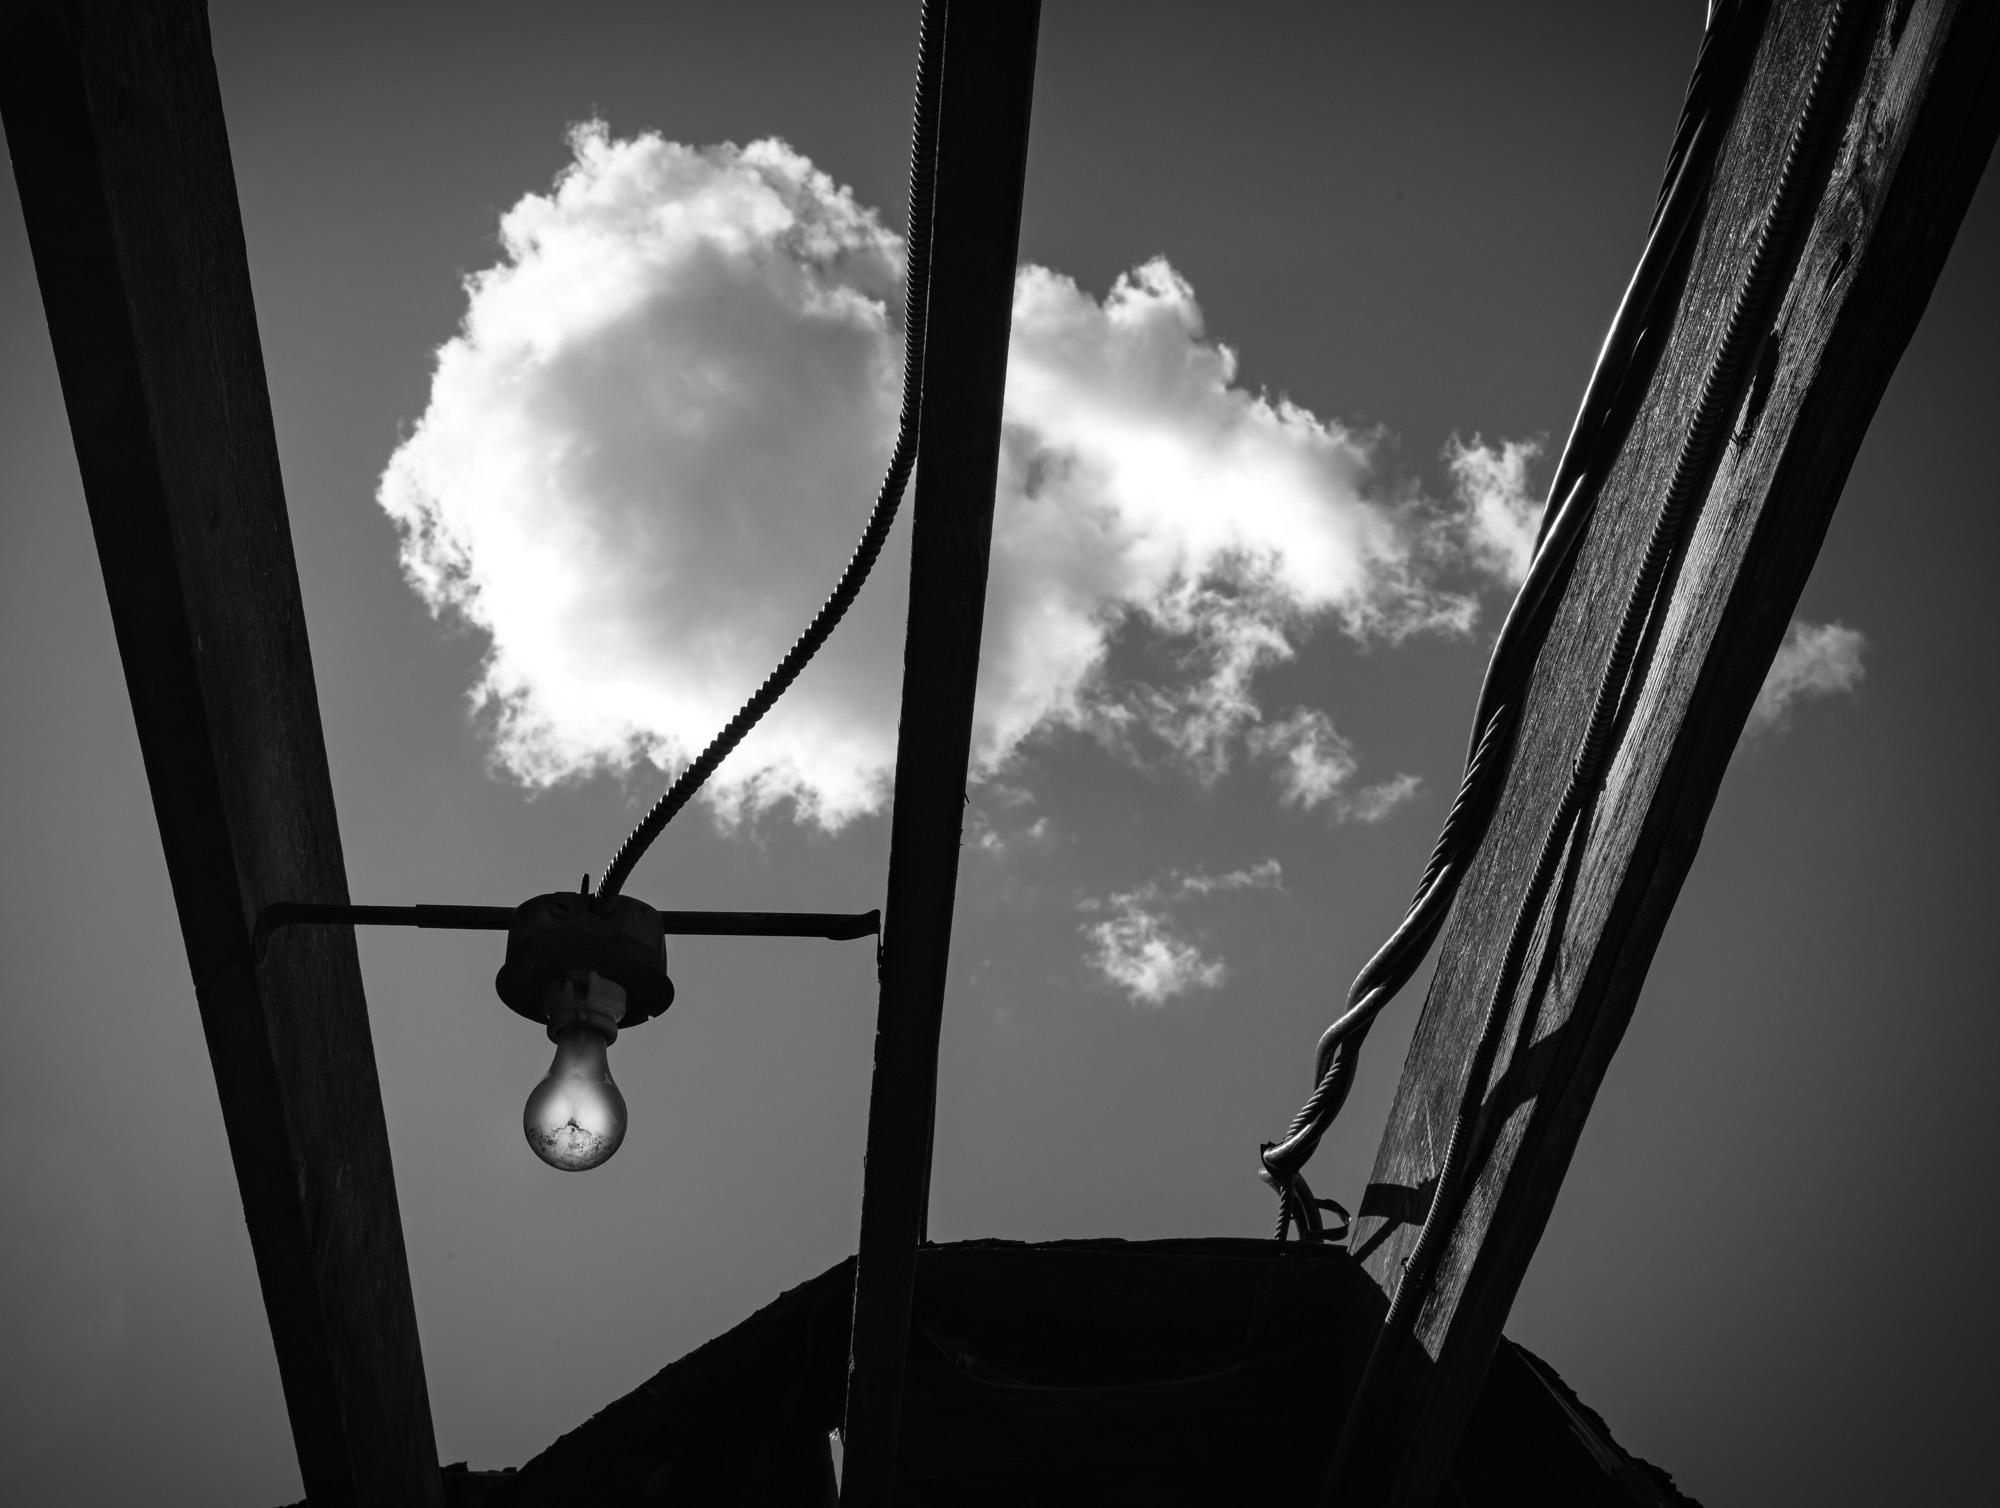 Black and White Photograph Howard Lewis - Édition limitée de la photographie en noir et blanc, ampoule et nuage 2021